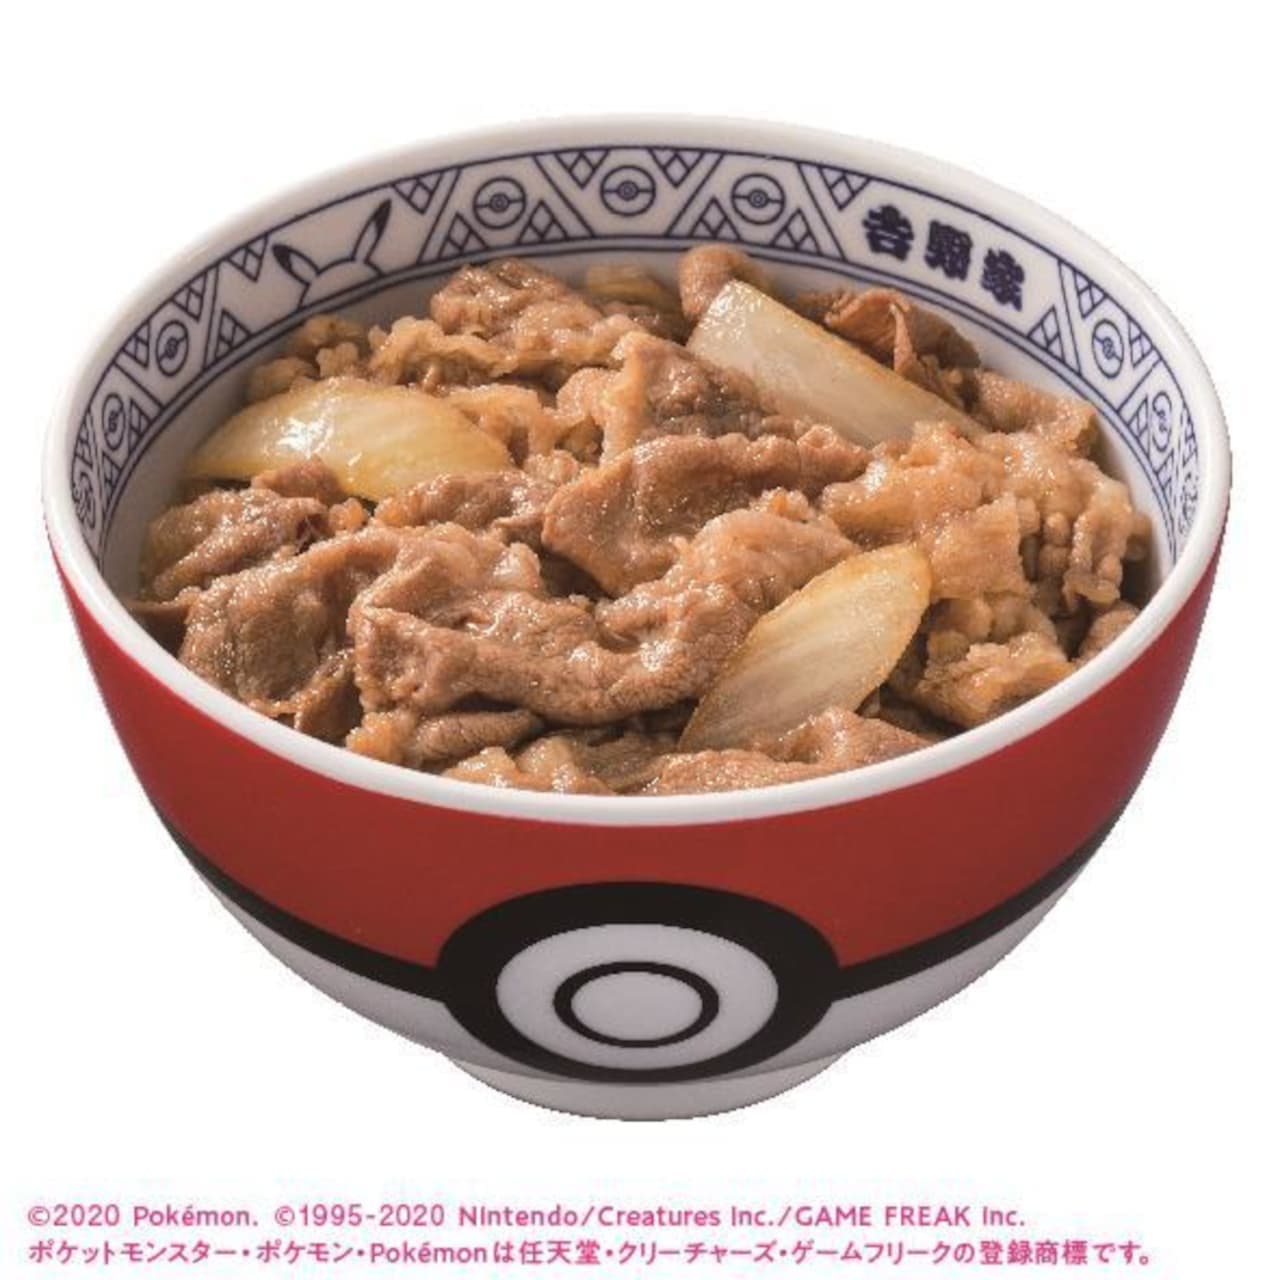 "Pokemori" campaign